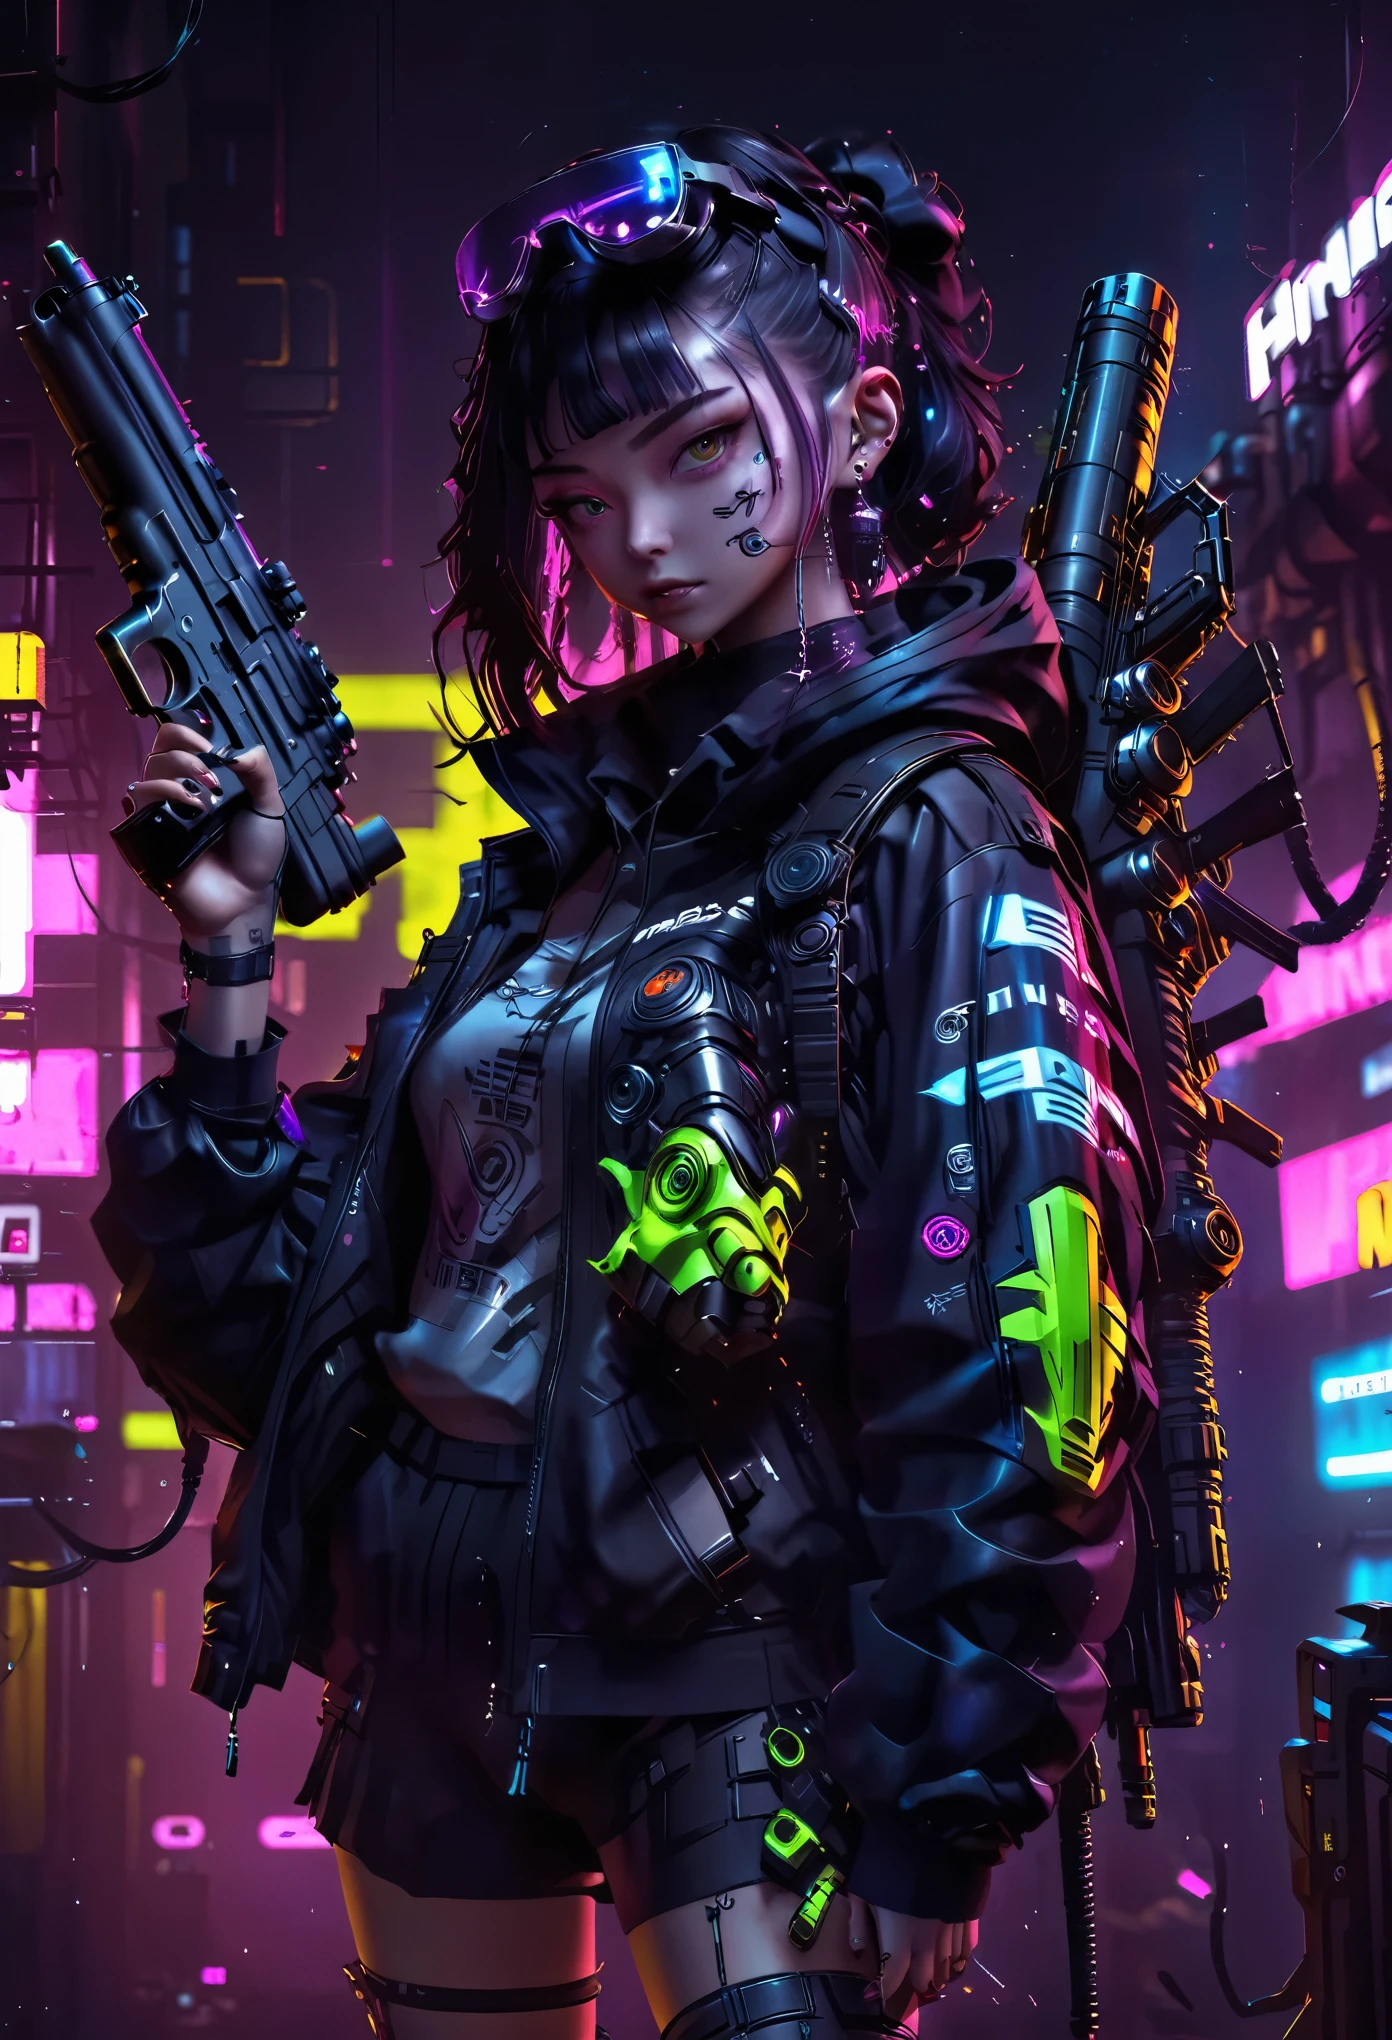 ein Mädchen、Neon Art、cyber punk、Waffen、Pistole、Raketenwerfer、Rakete